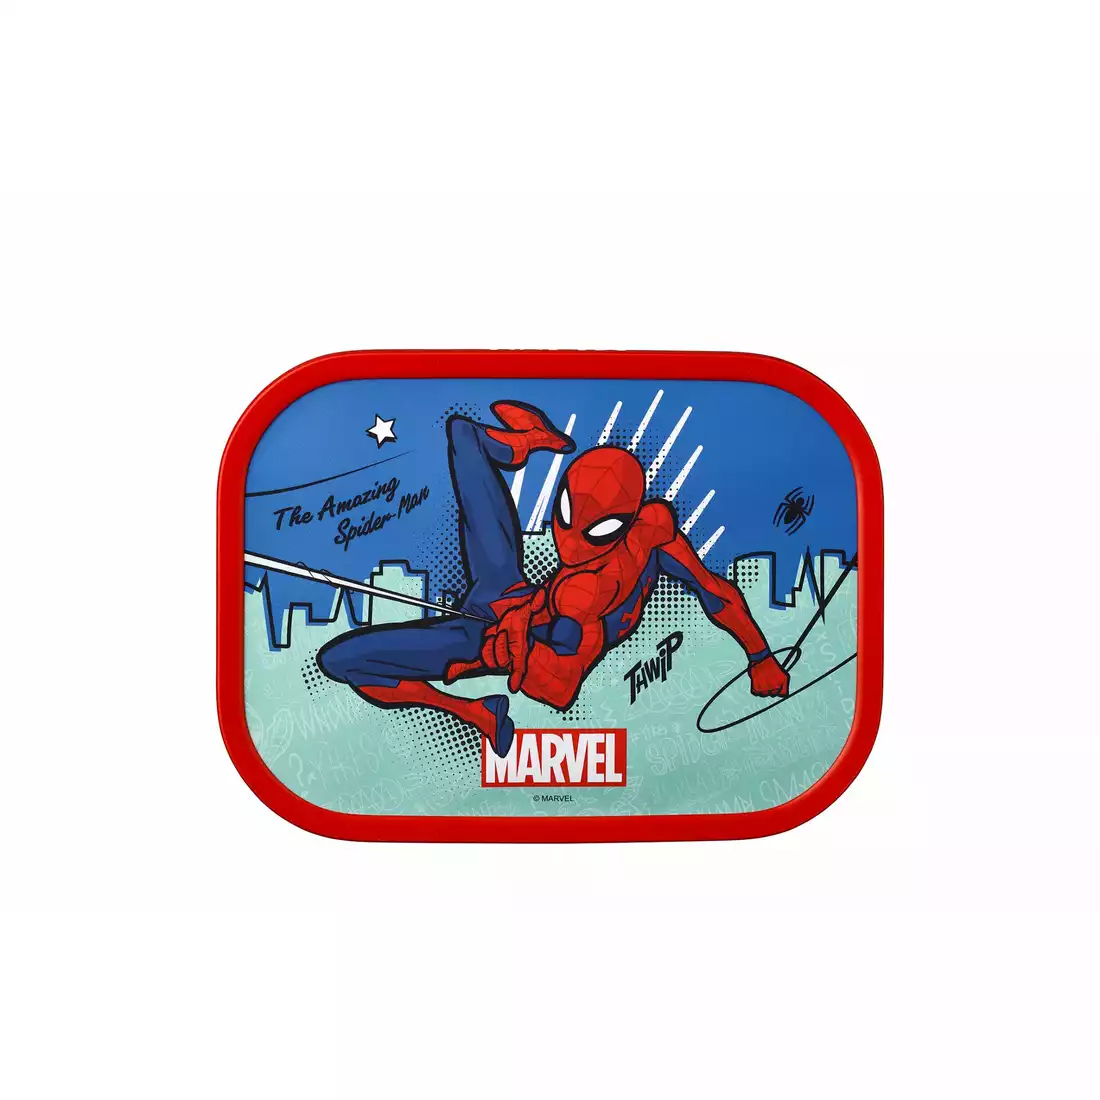 Mepal Campus Spiderman pentru copii lunchbox, albastru rosu